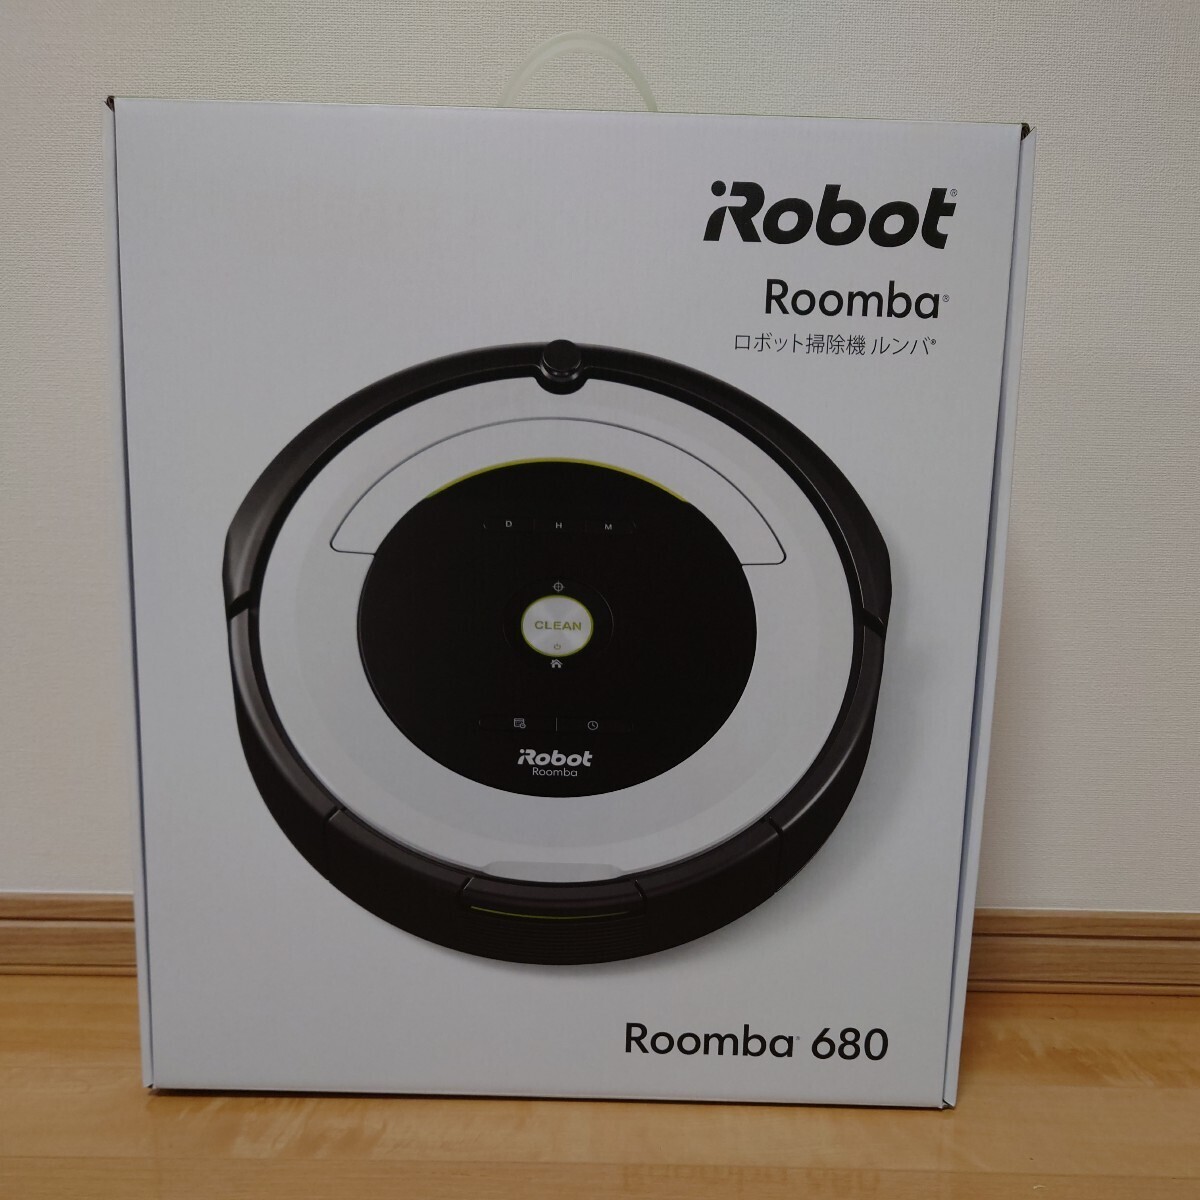  roomba 680 новый товар не использовался нераспечатанный iRobot робот пылесос 